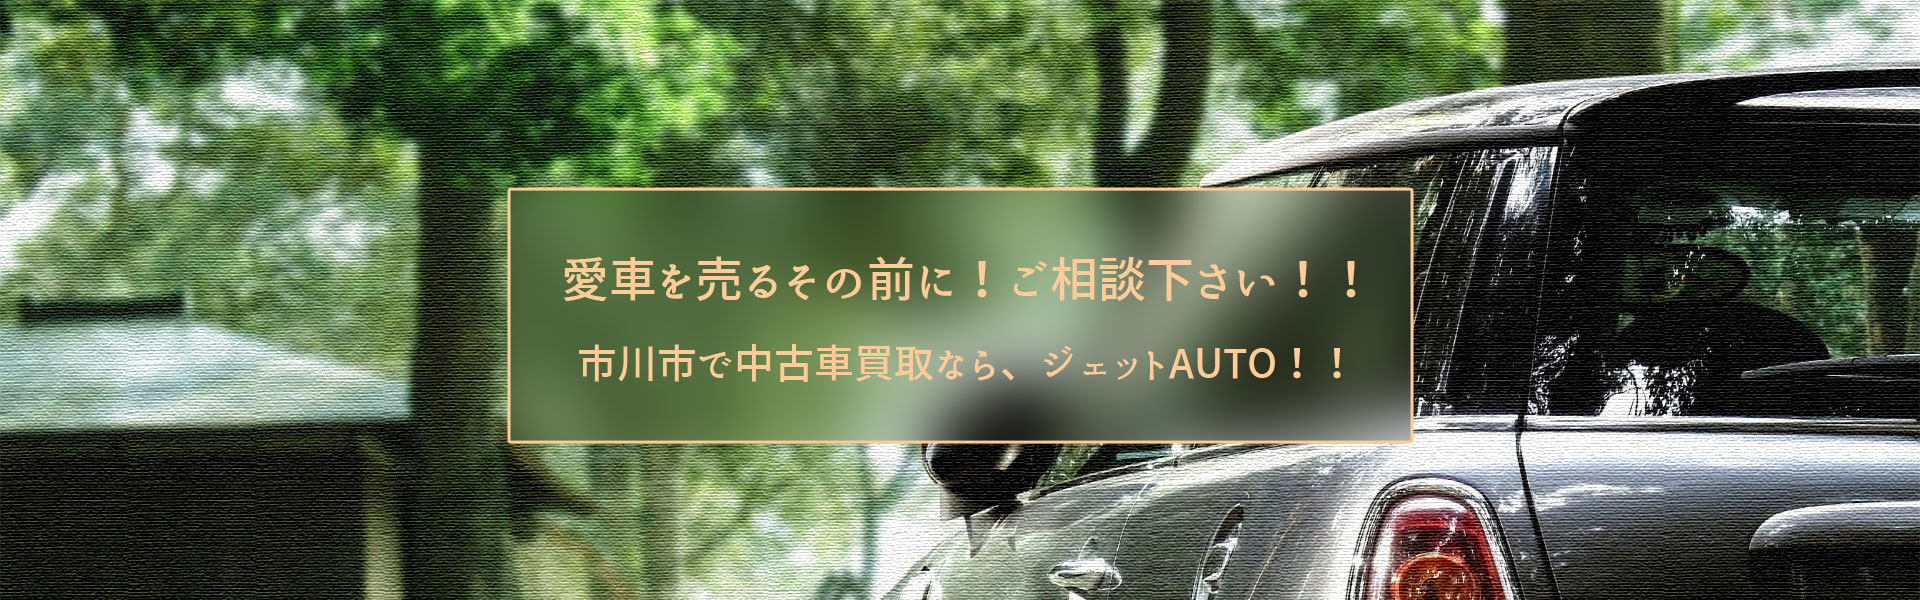 千葉県市川市で中古車買い取りならジェットauto